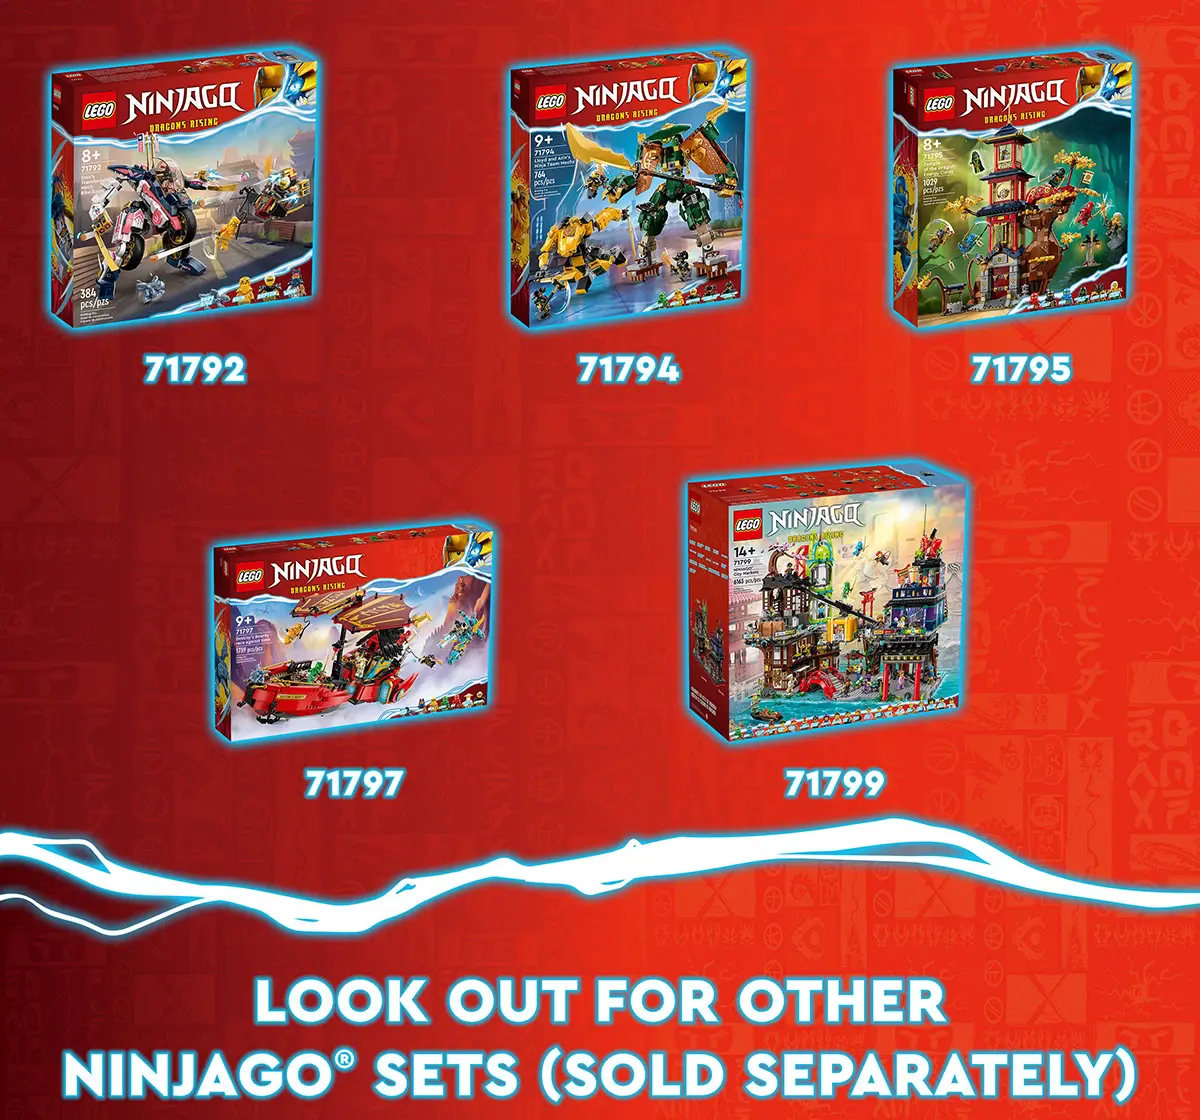 Lego Ninjago Imperium Dragon Hunter Hound 71790 Building Toy Set (198 Pieces), 6Y+